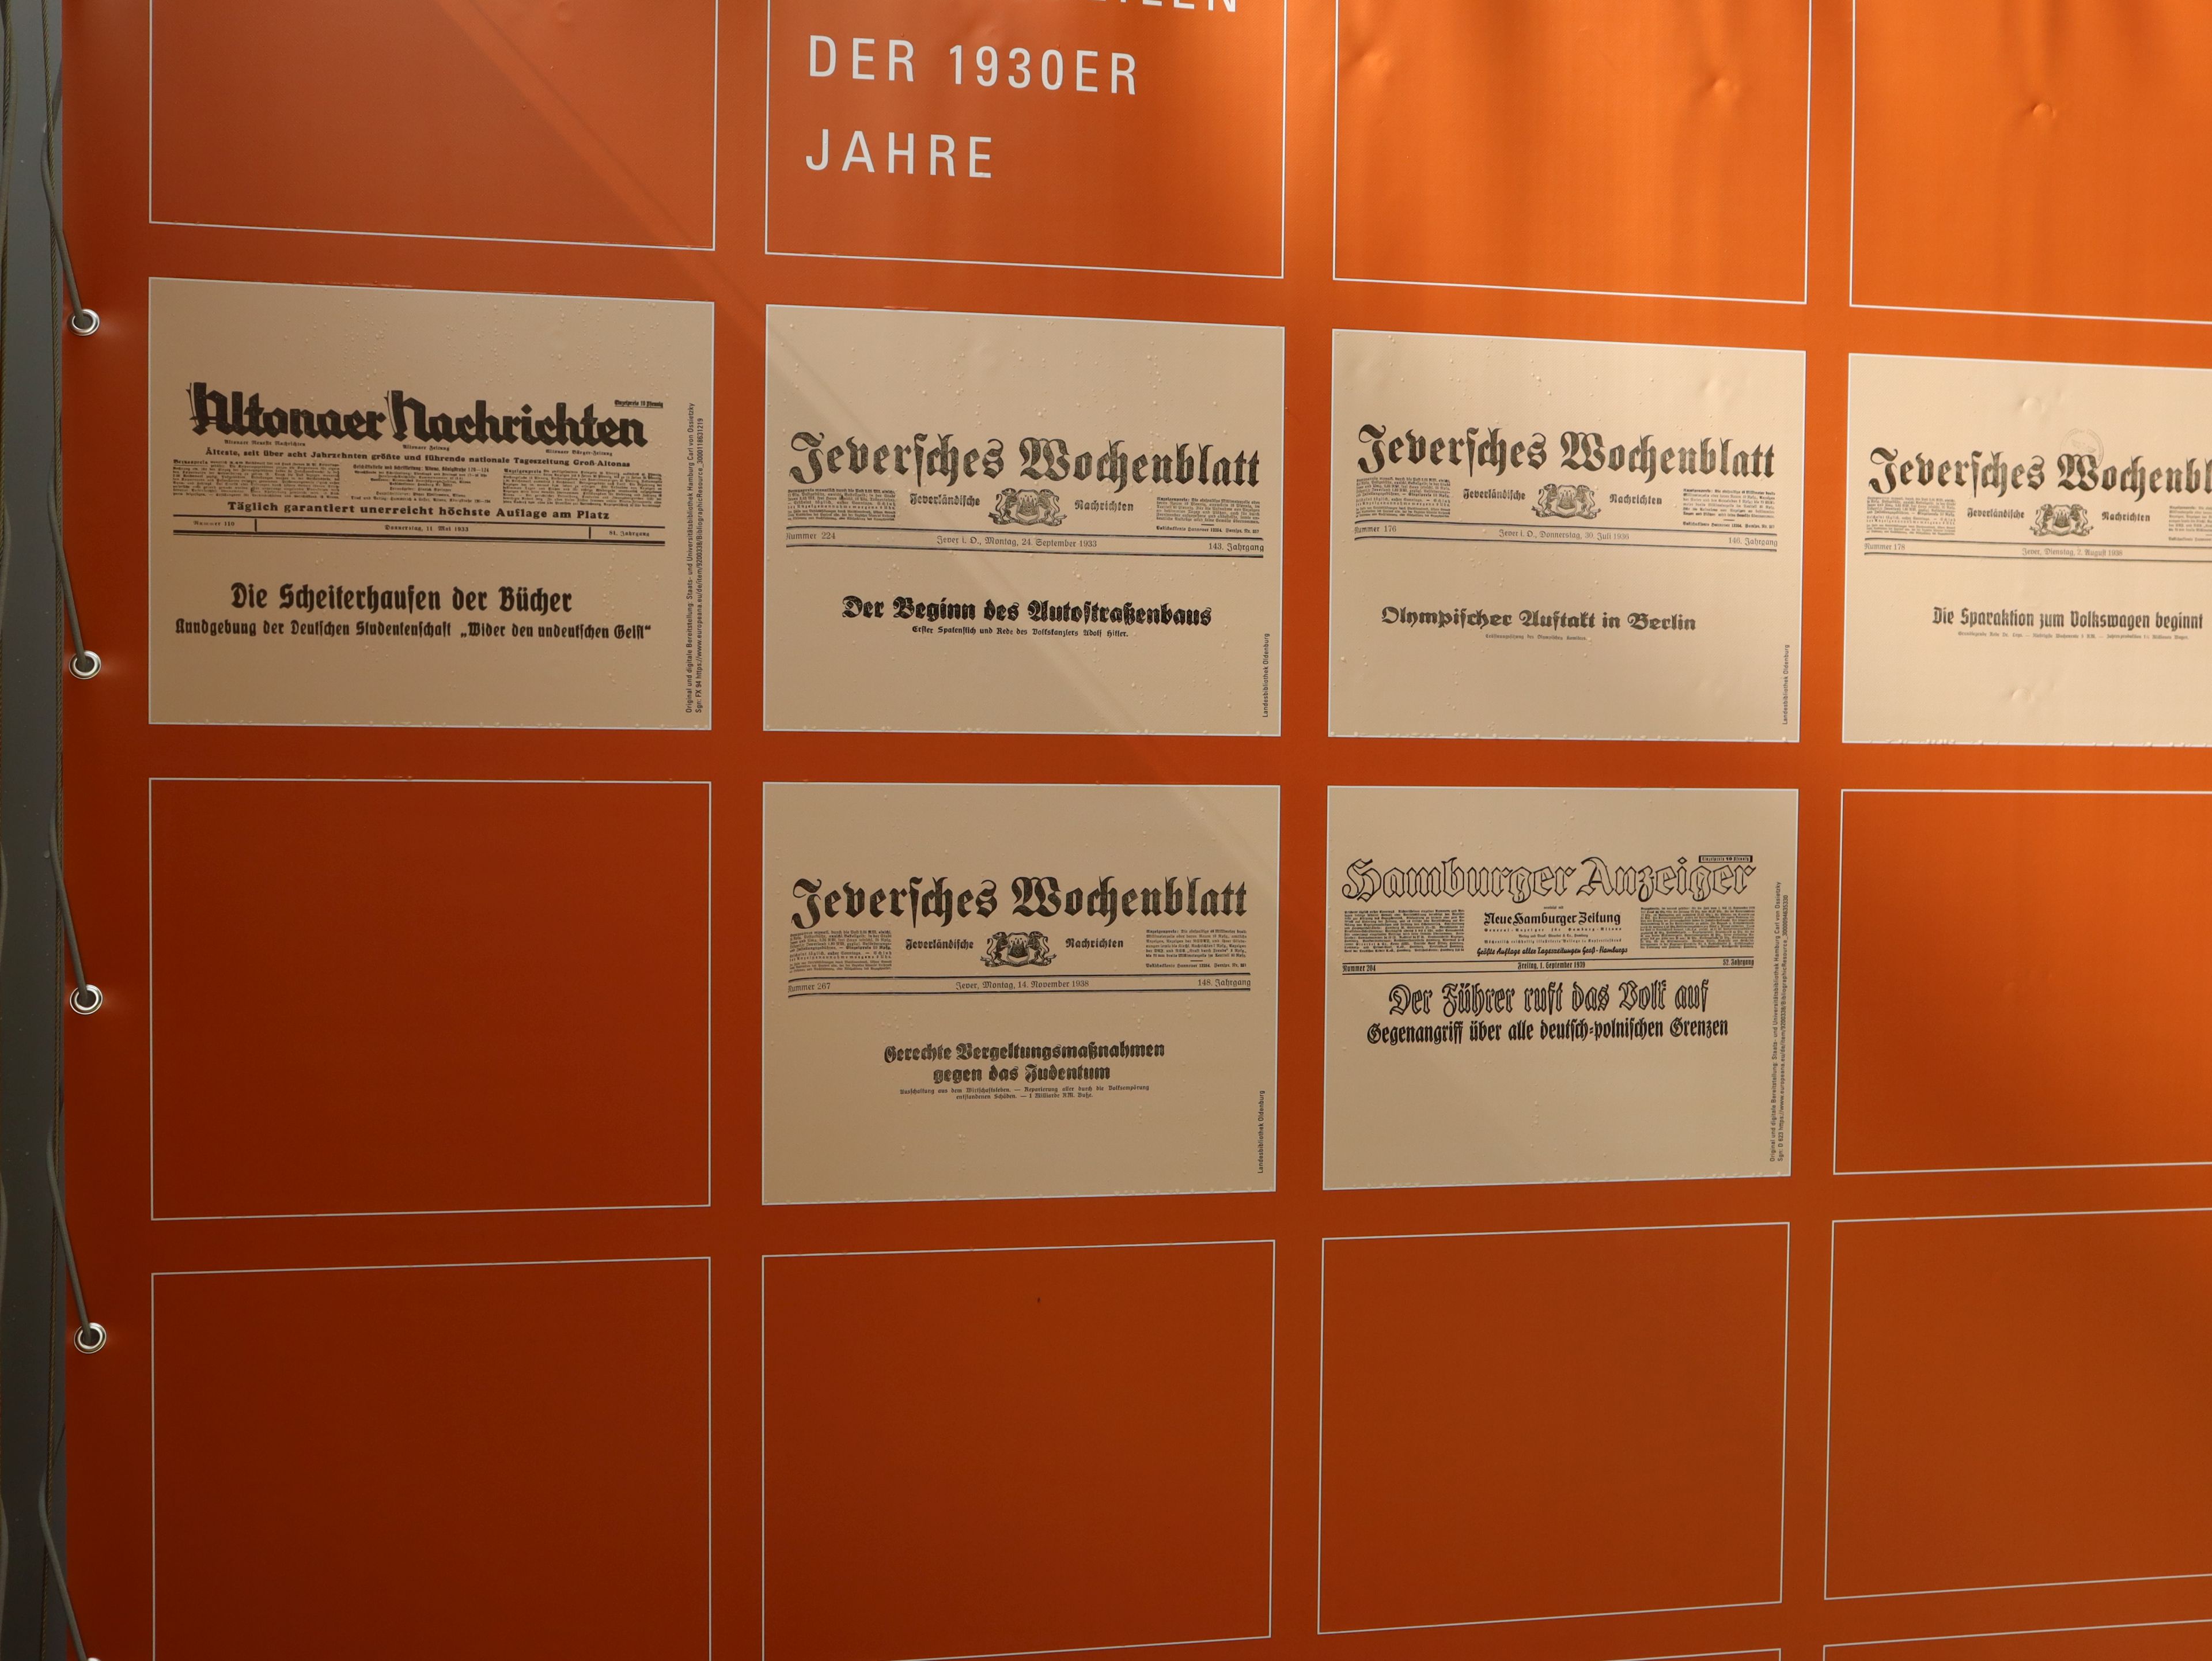 Historische Schlagzeilen in Zeitungen der 1930er Jahre in der Jubiläumsausstellung des Museumsdorfs Cloppenburg